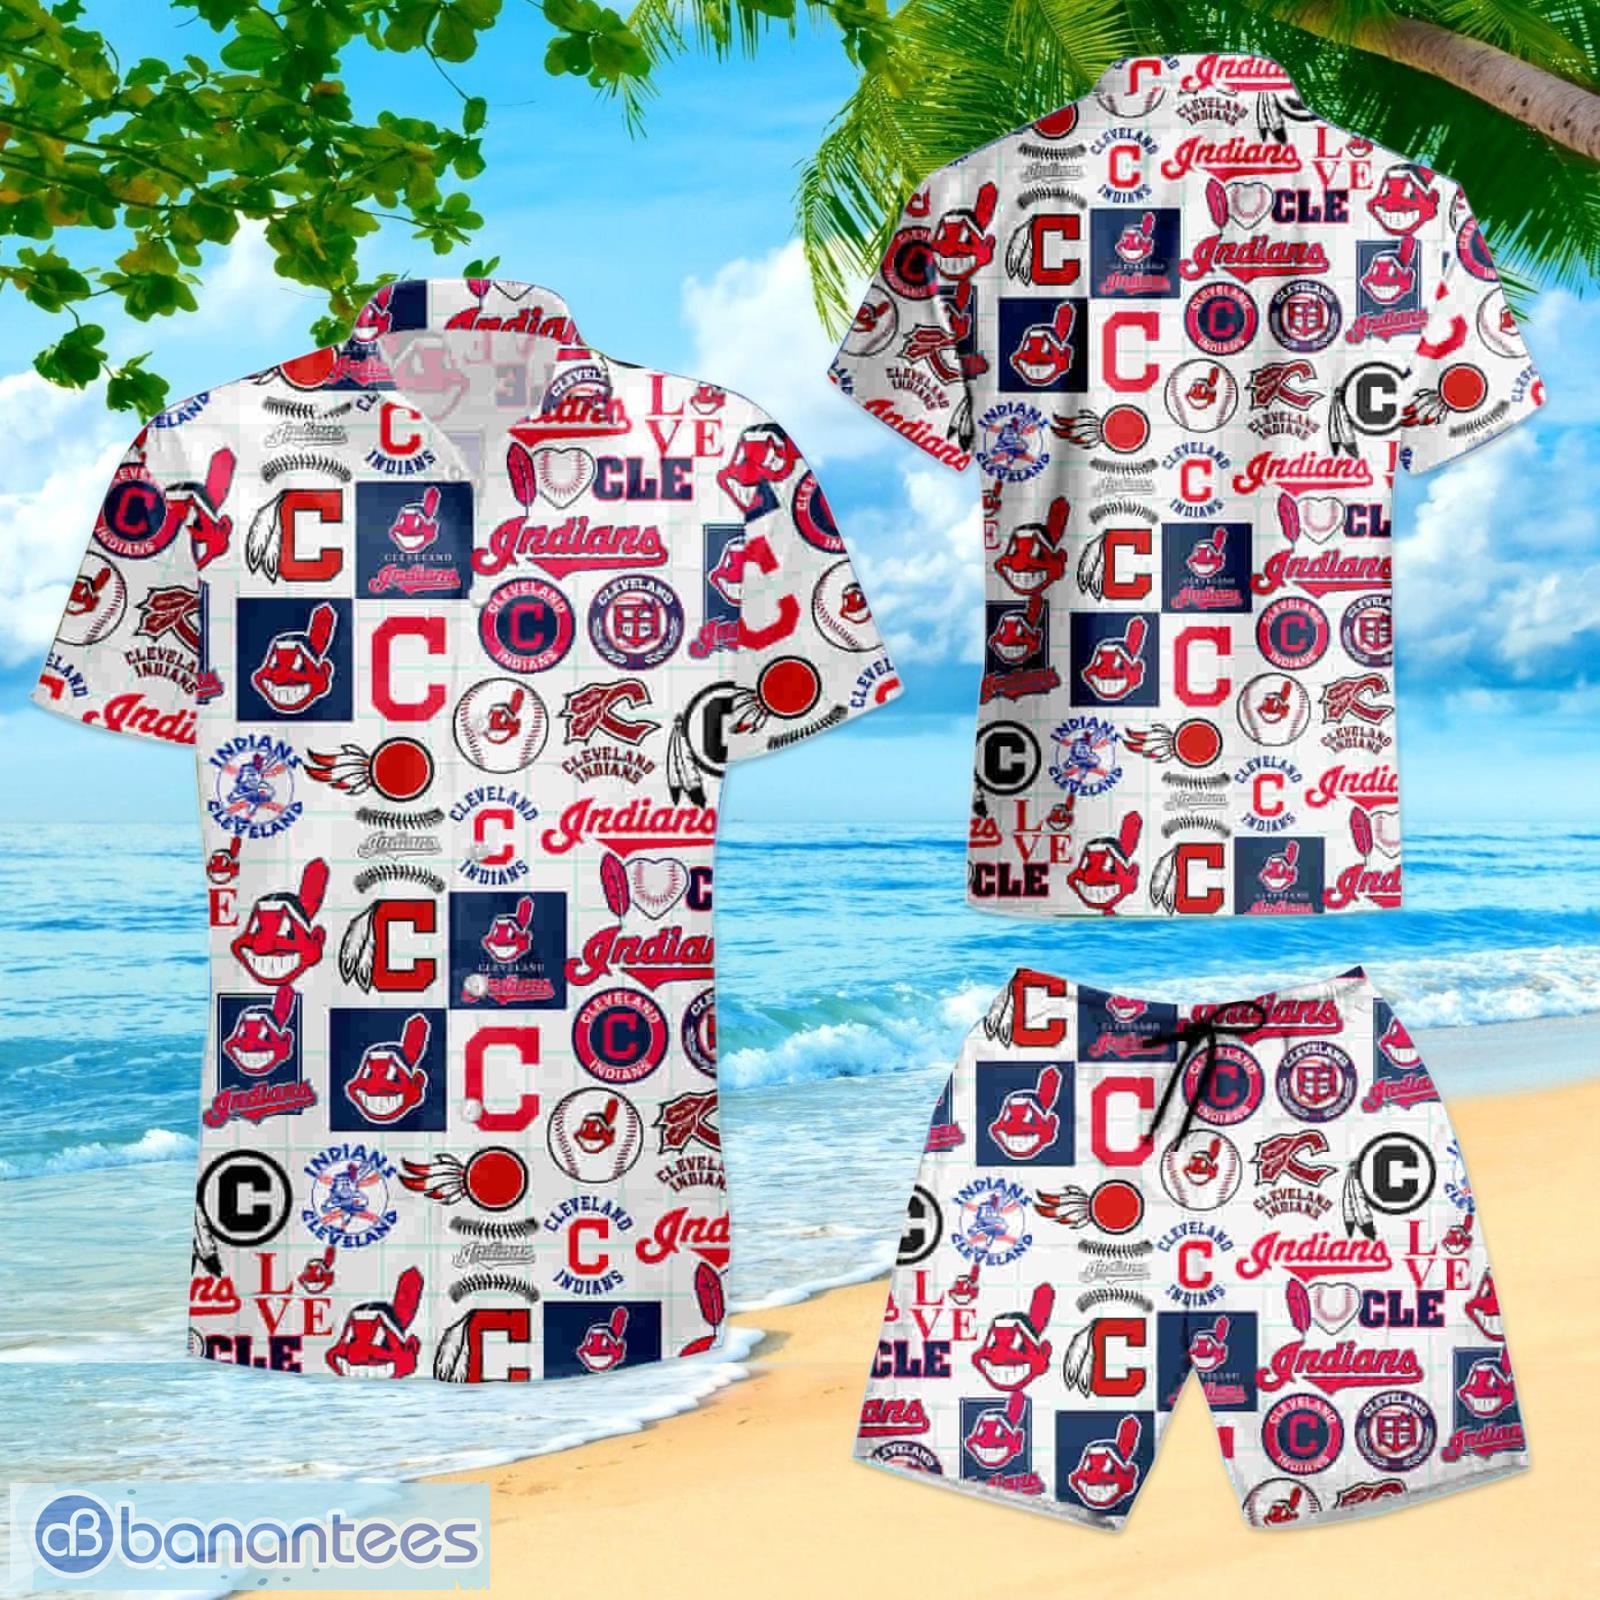 LIMITED] Cleveland Indians MLB-Summer Hawaiian Shirt And Shorts